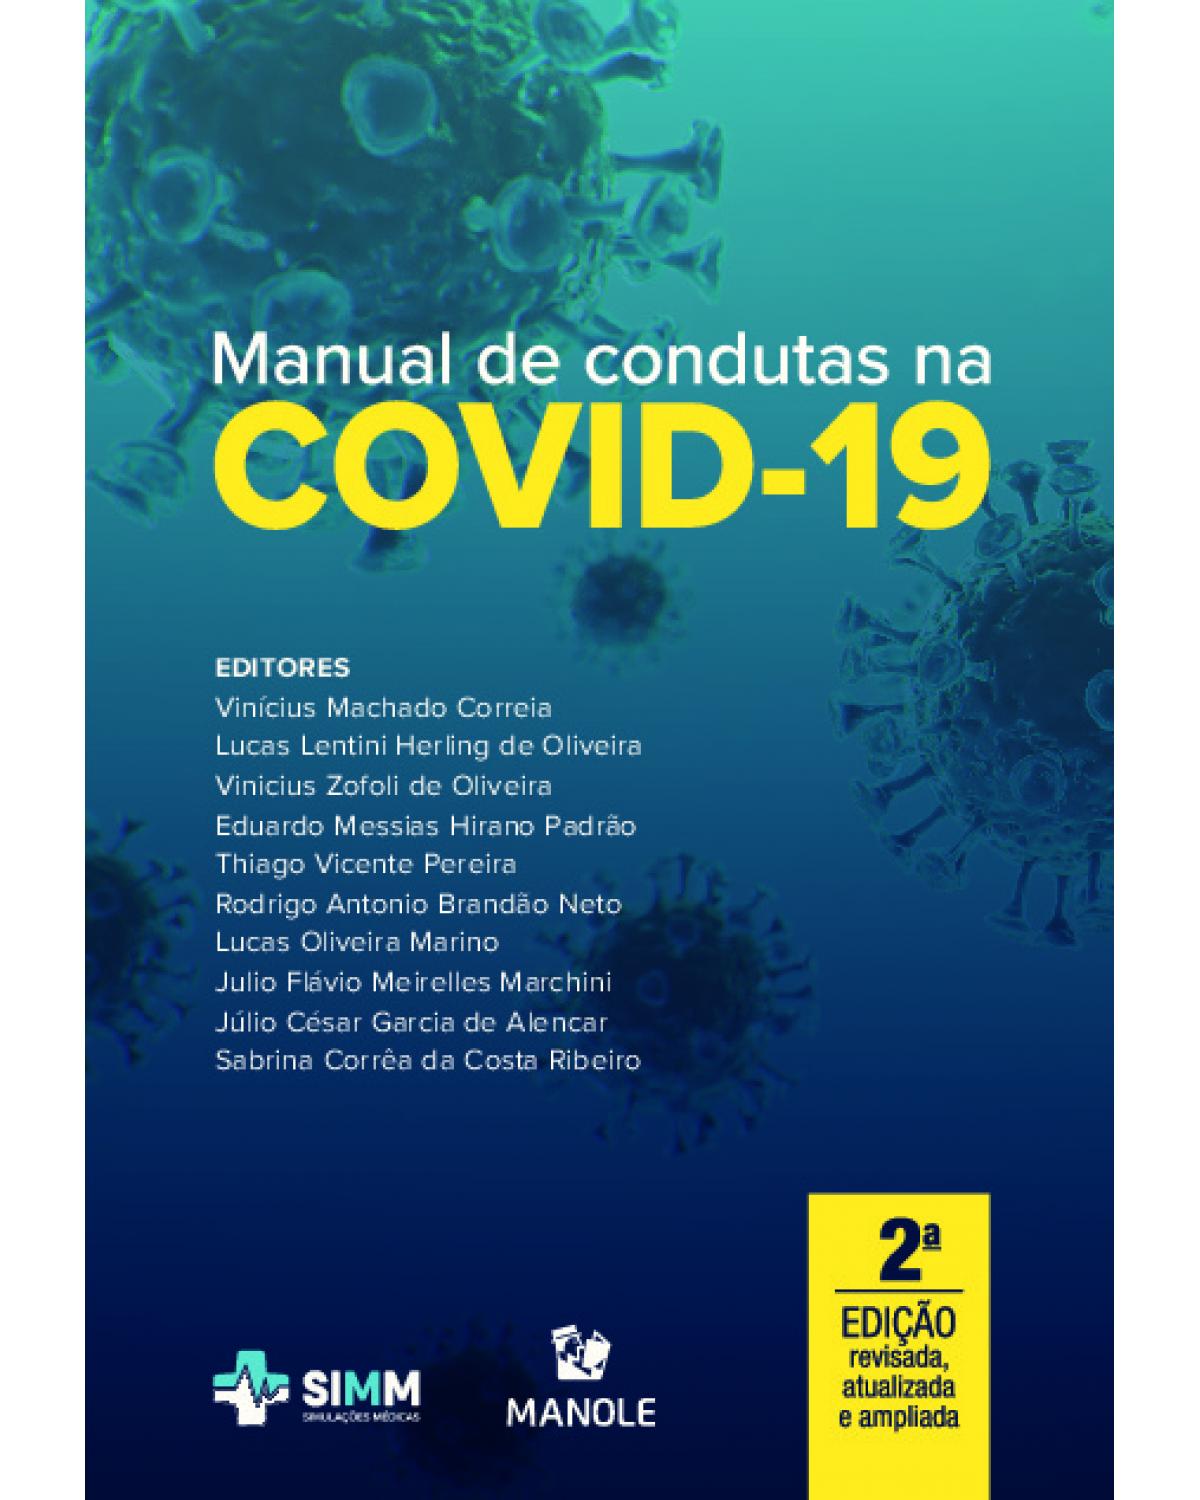 Manual de condutas na Covid-19 - 2ª Edição | 2021